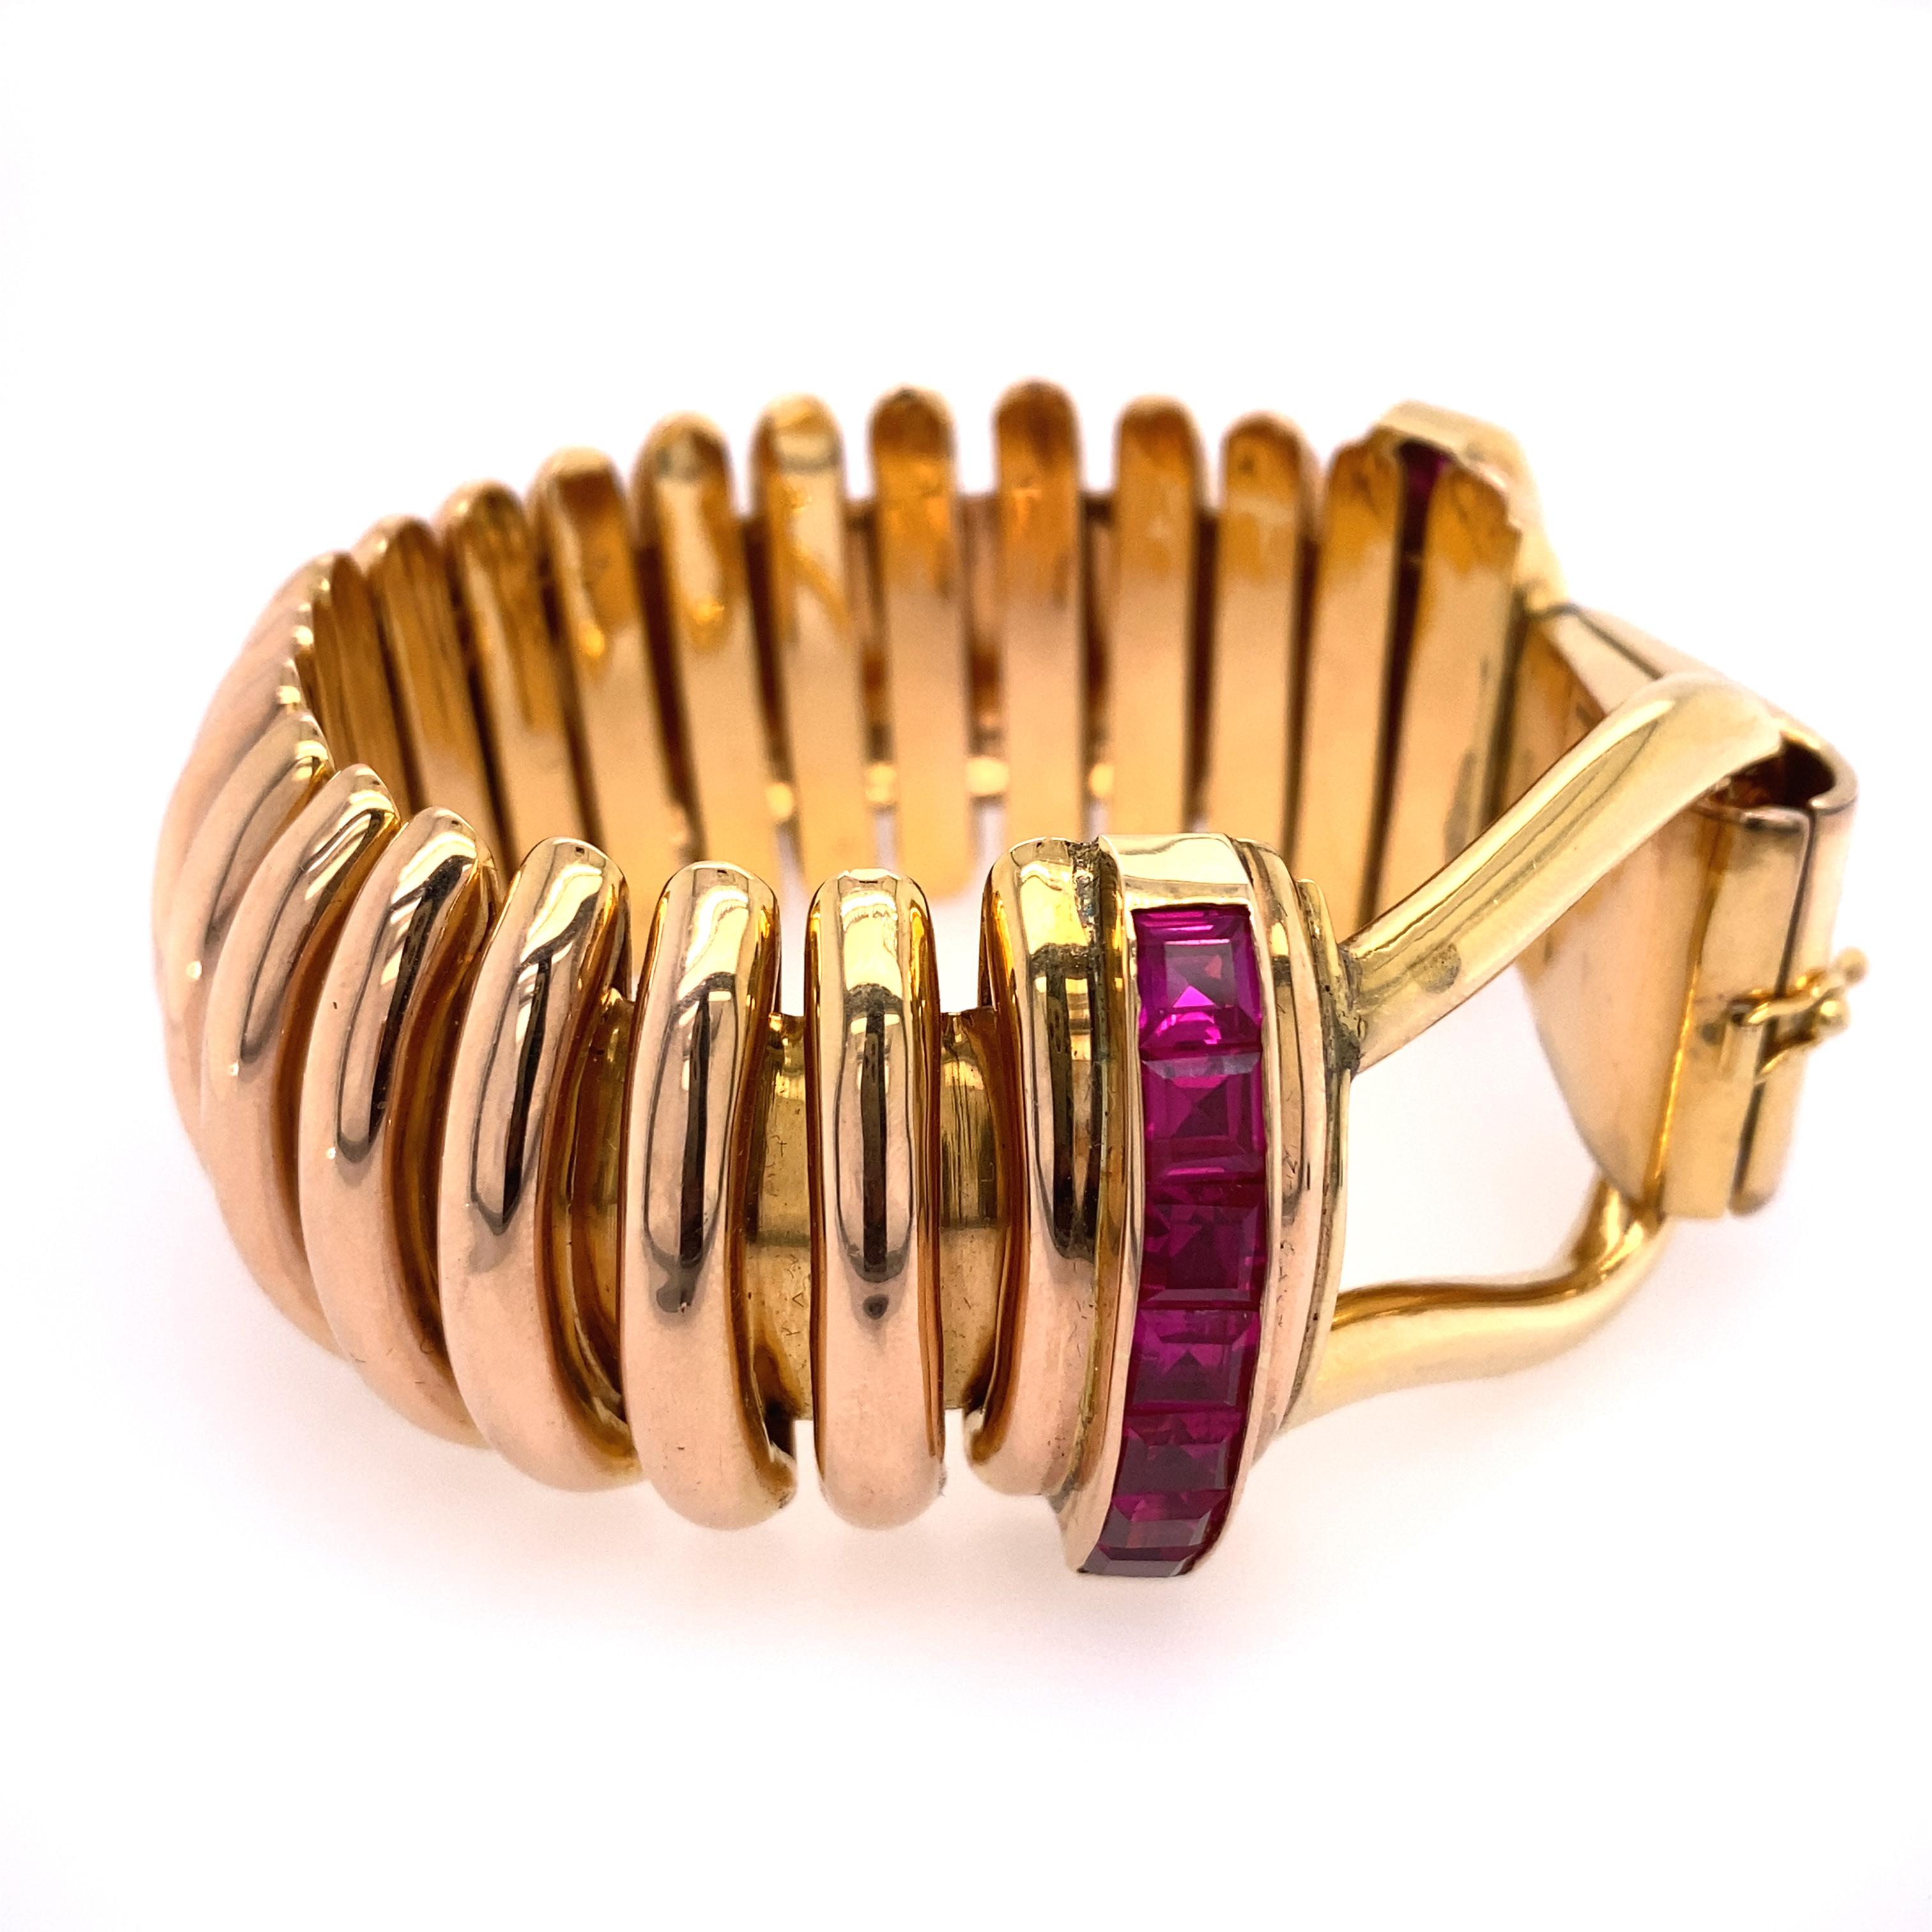 Bracelet lourd en or rose 18k avec rubis et diamants synthétiques.
Poids total 120.2 dwt.  Mesure du bracelet : 8.50